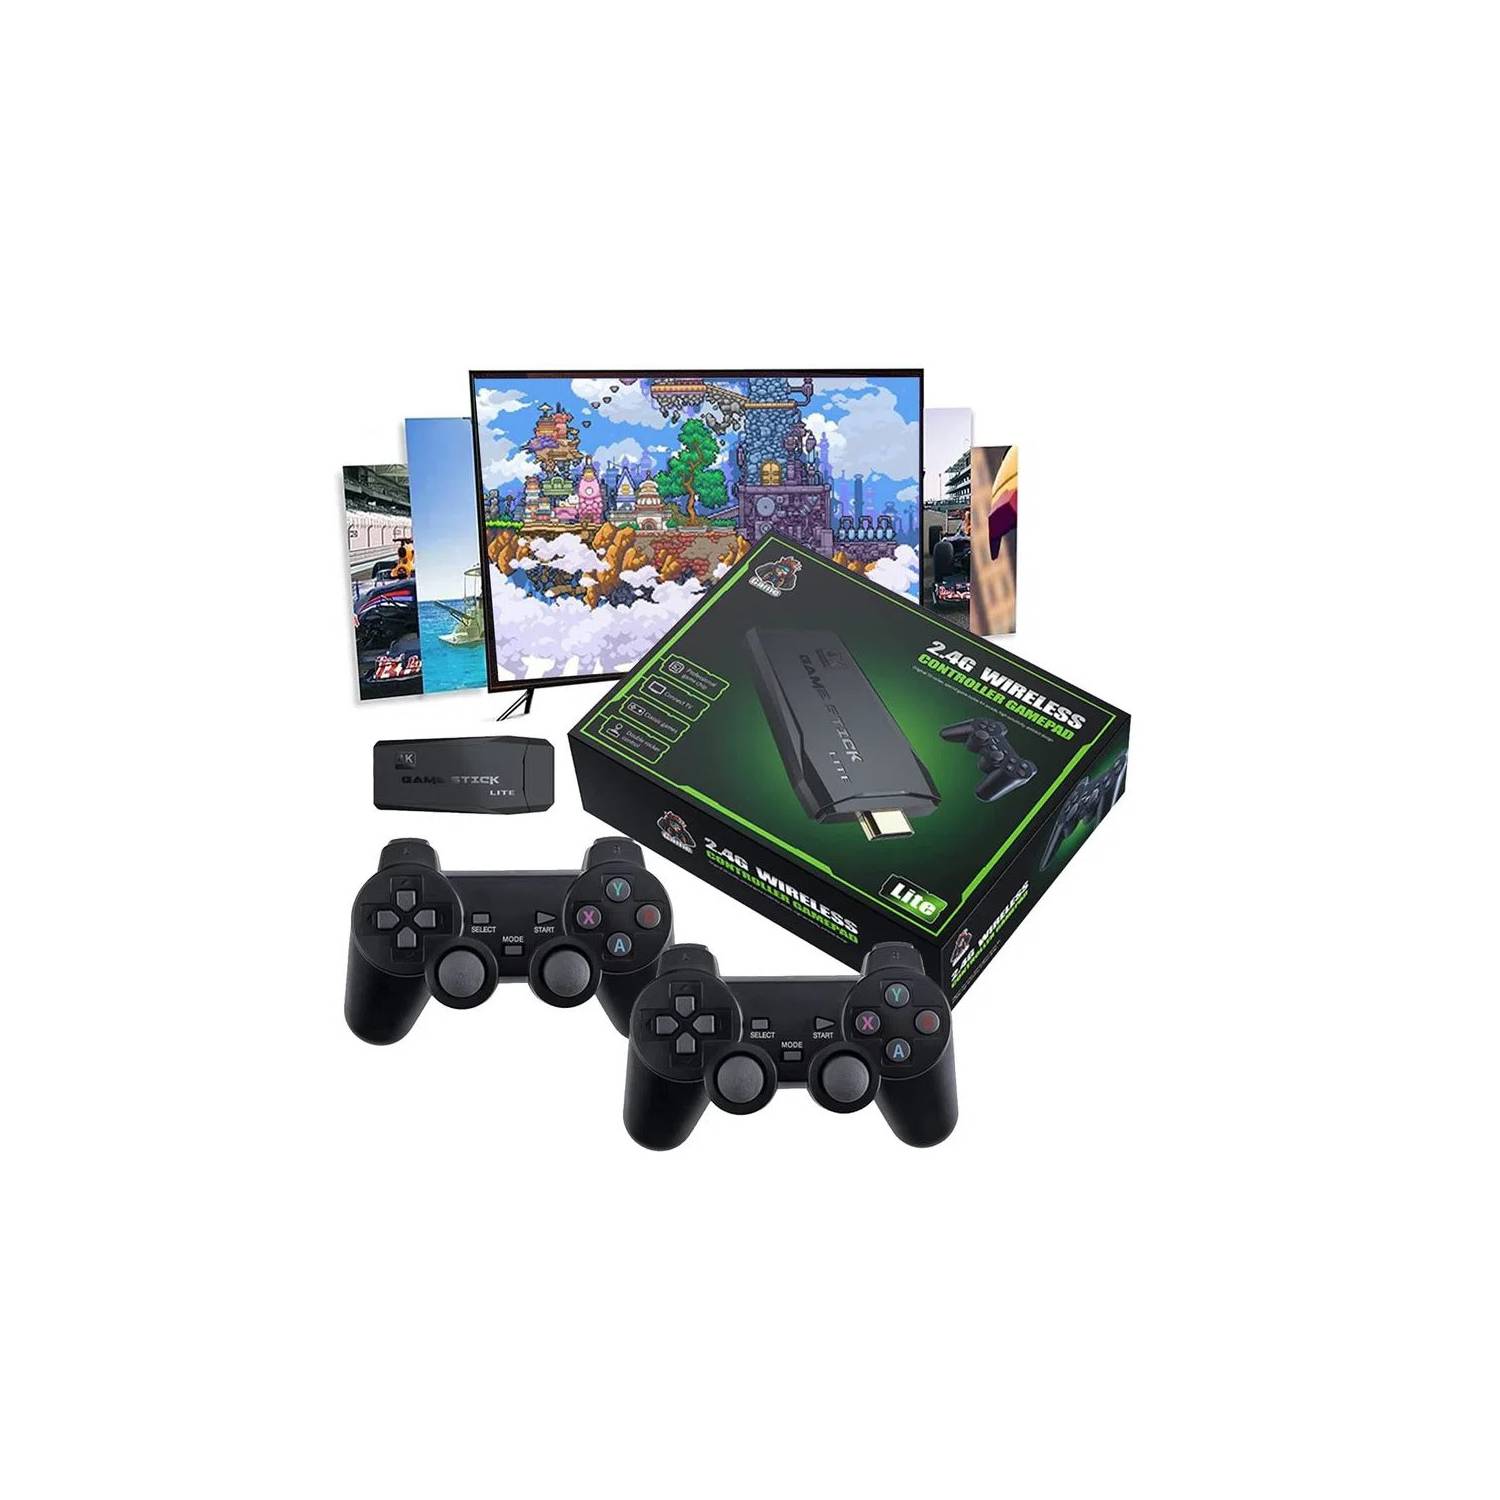 Mini Consola Snes Ps1 Retro 10000 Juegos con 2 Mandos 2.4 Gz